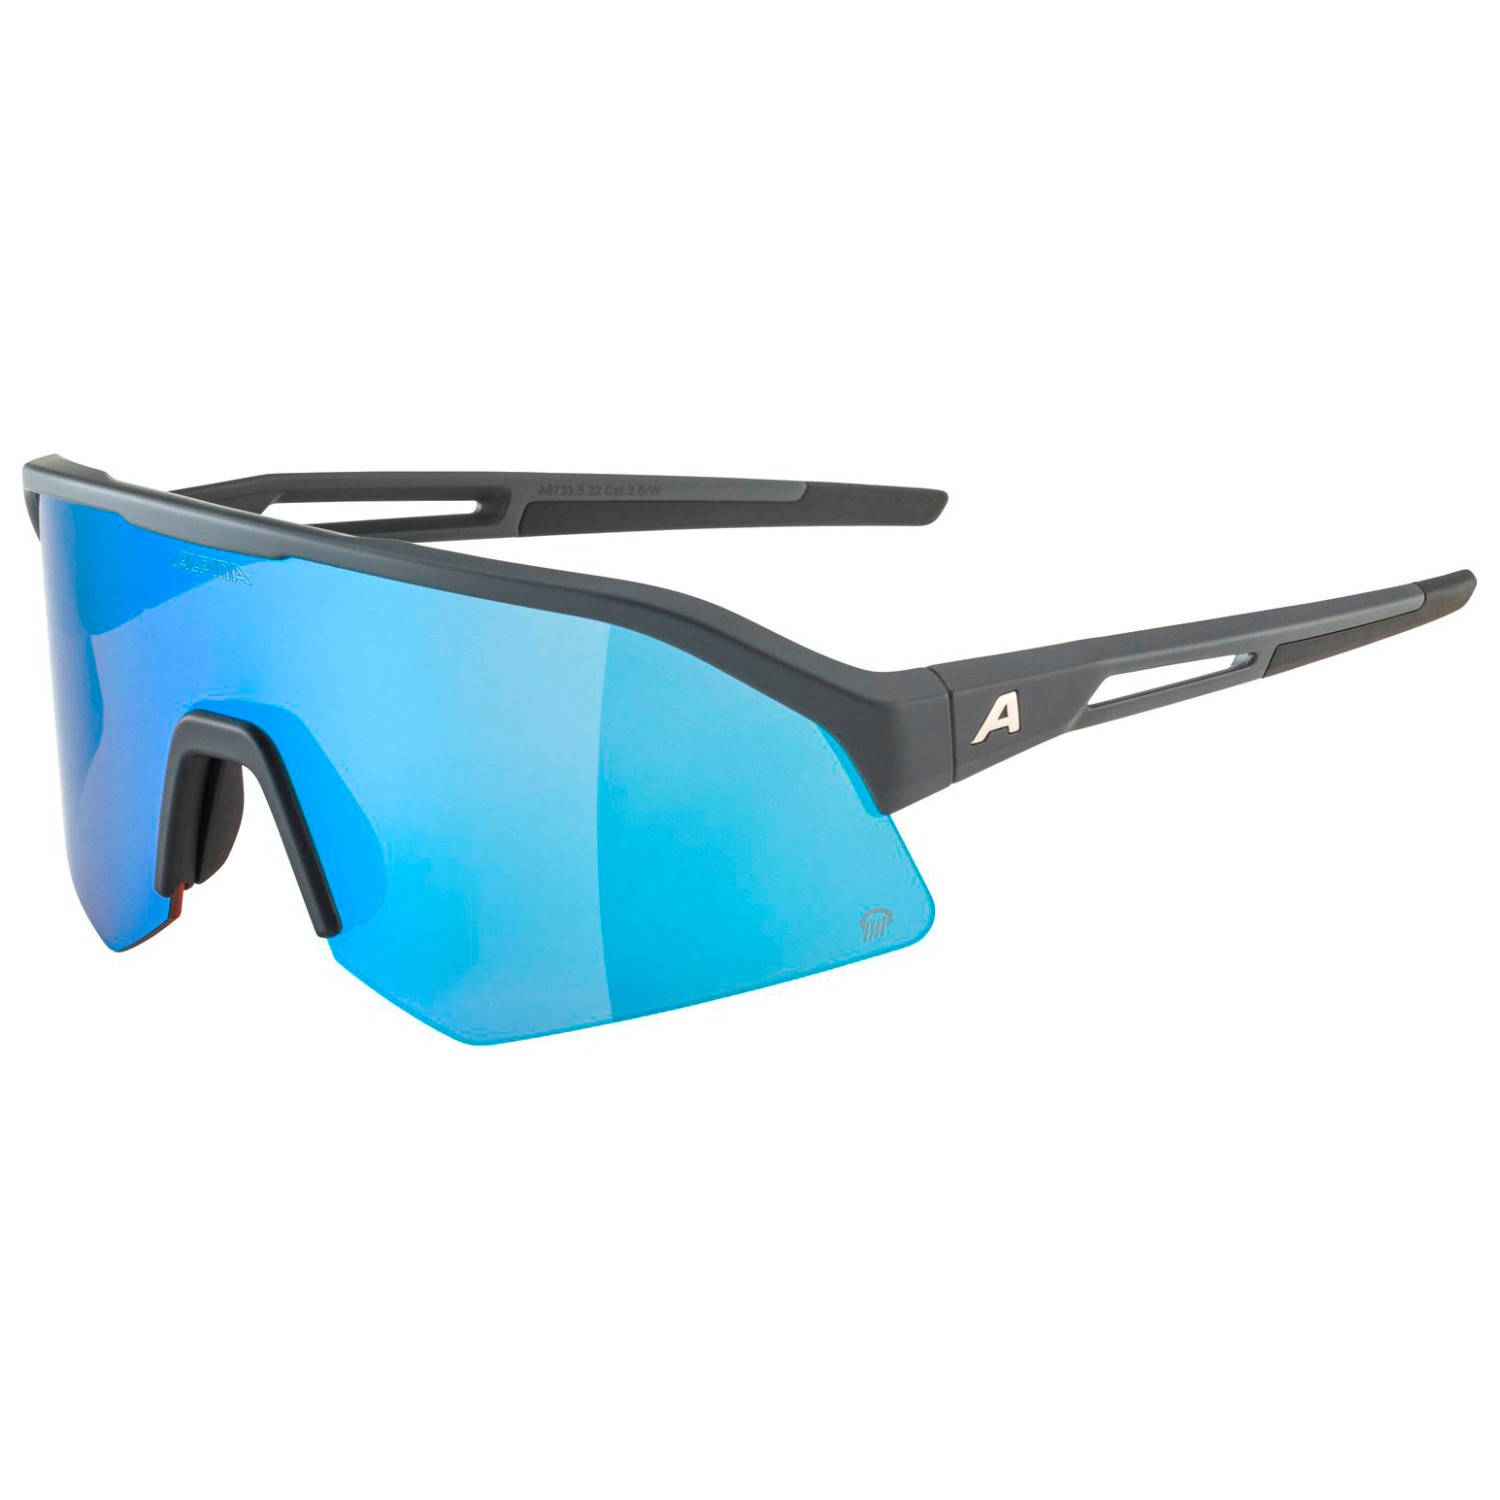 Велосипедные очки Alpina Sonic HR Q Mirror Cat 2, цвет Midnight/Grey Matt очки солнцезащитные alpina luzy белый пурпурный зеркальный a8571310